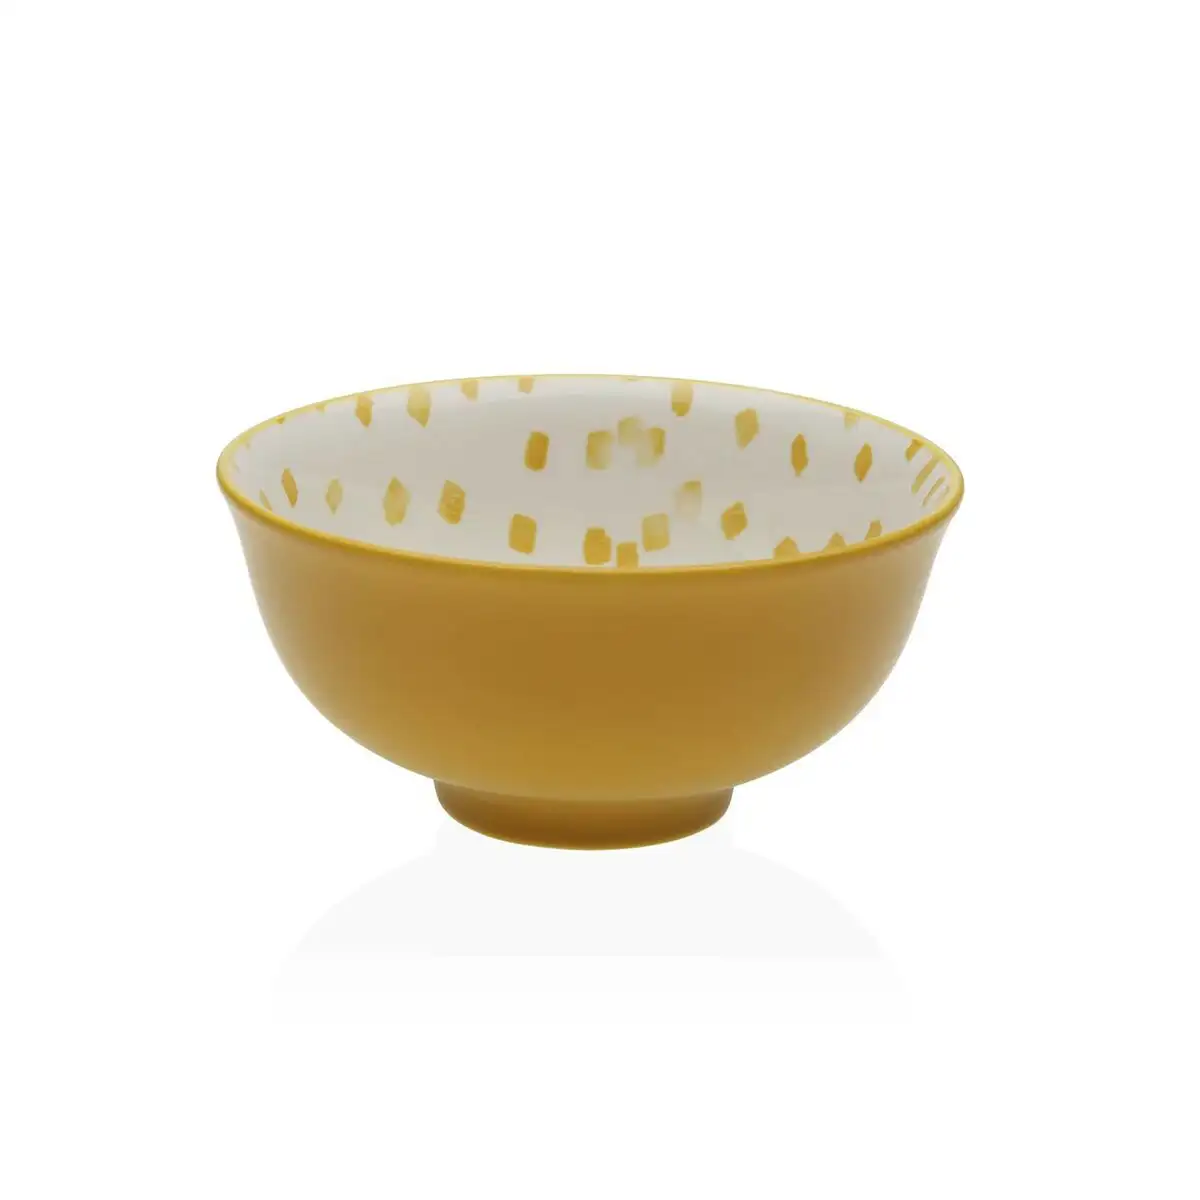 Bol versa jaune ceramique porcelaine_9576. DIAYTAR SENEGAL - Votre Destinée Shopping Personnalisée. Plongez dans notre boutique en ligne et créez votre propre expérience de shopping en choisissant parmi nos produits variés.